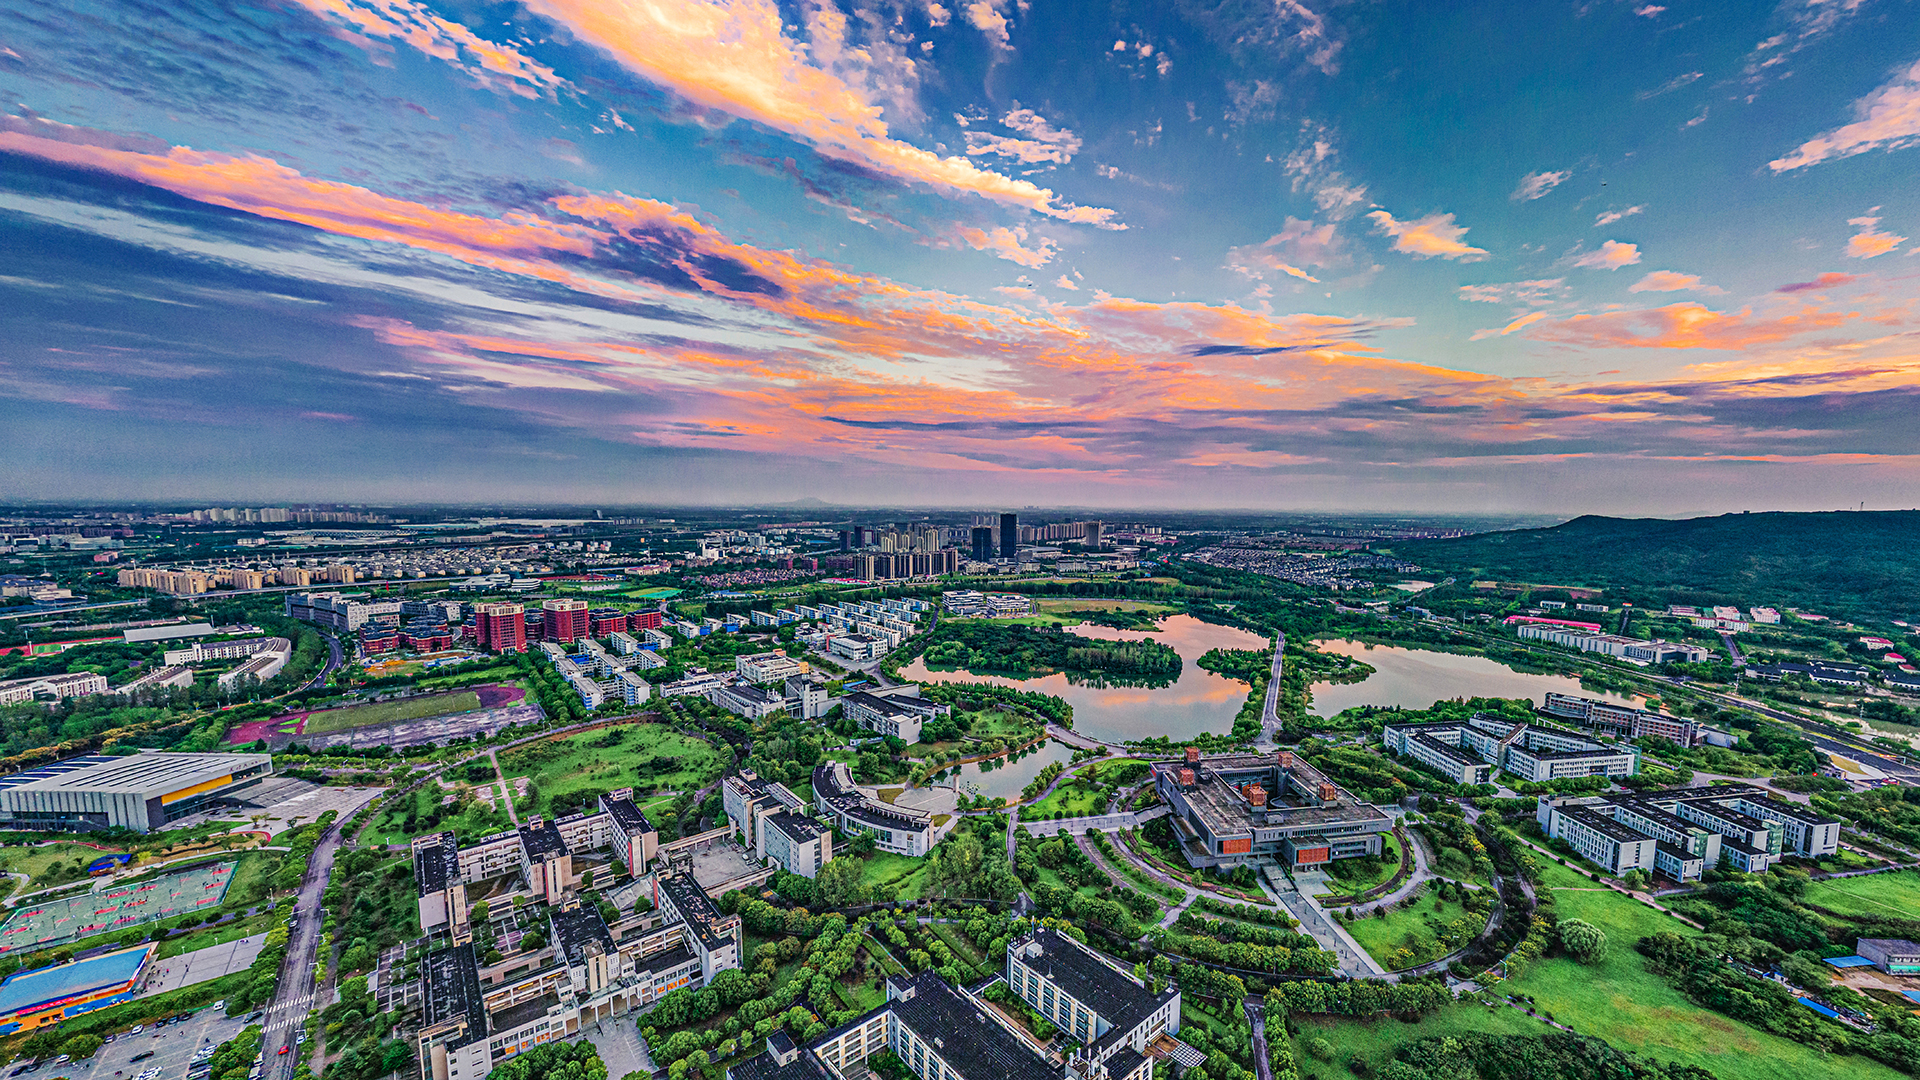 南京工程学院风景图片